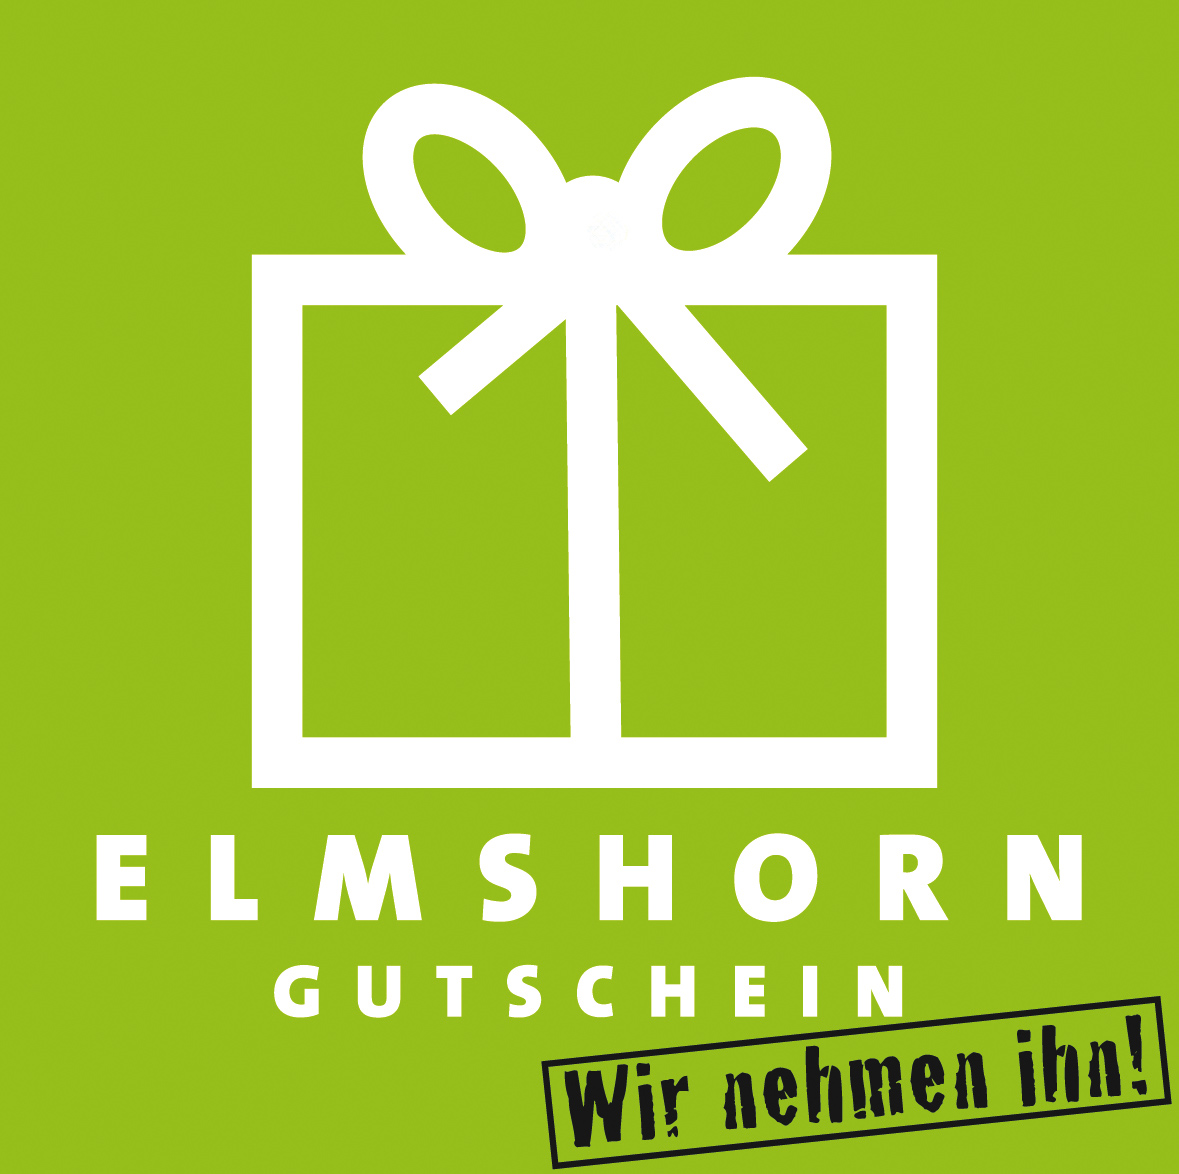 Elmshorn Gutschein Logo Download